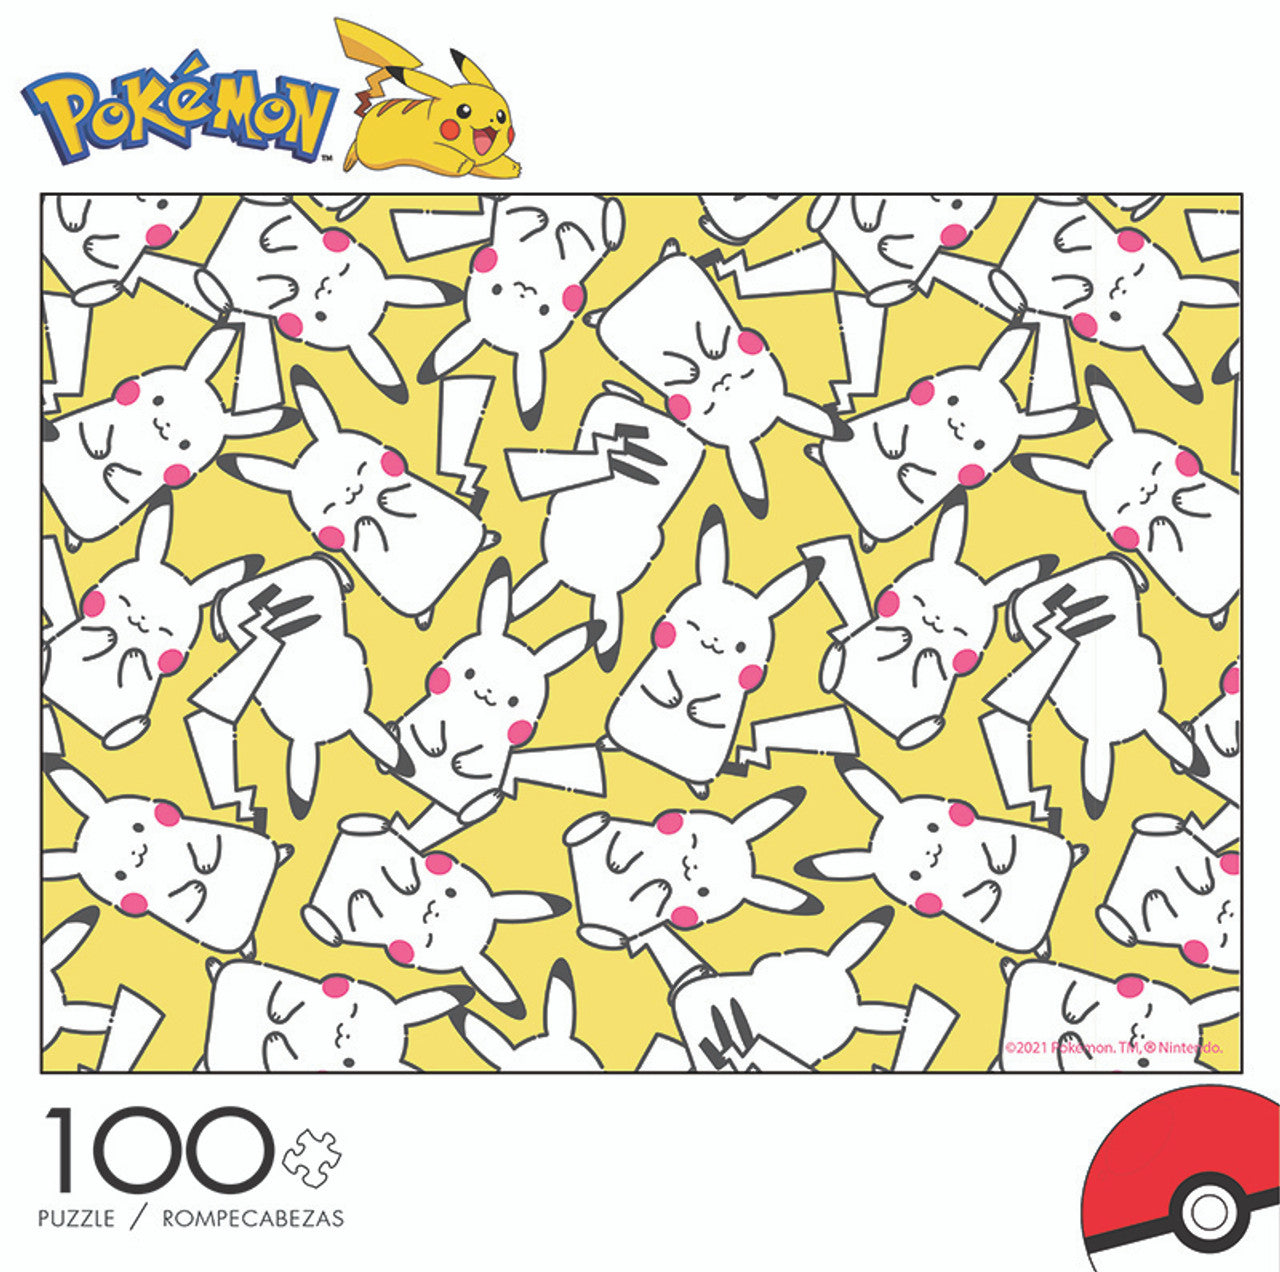 Pokémon Pikachu Pattern - 100 Piece Puzzle